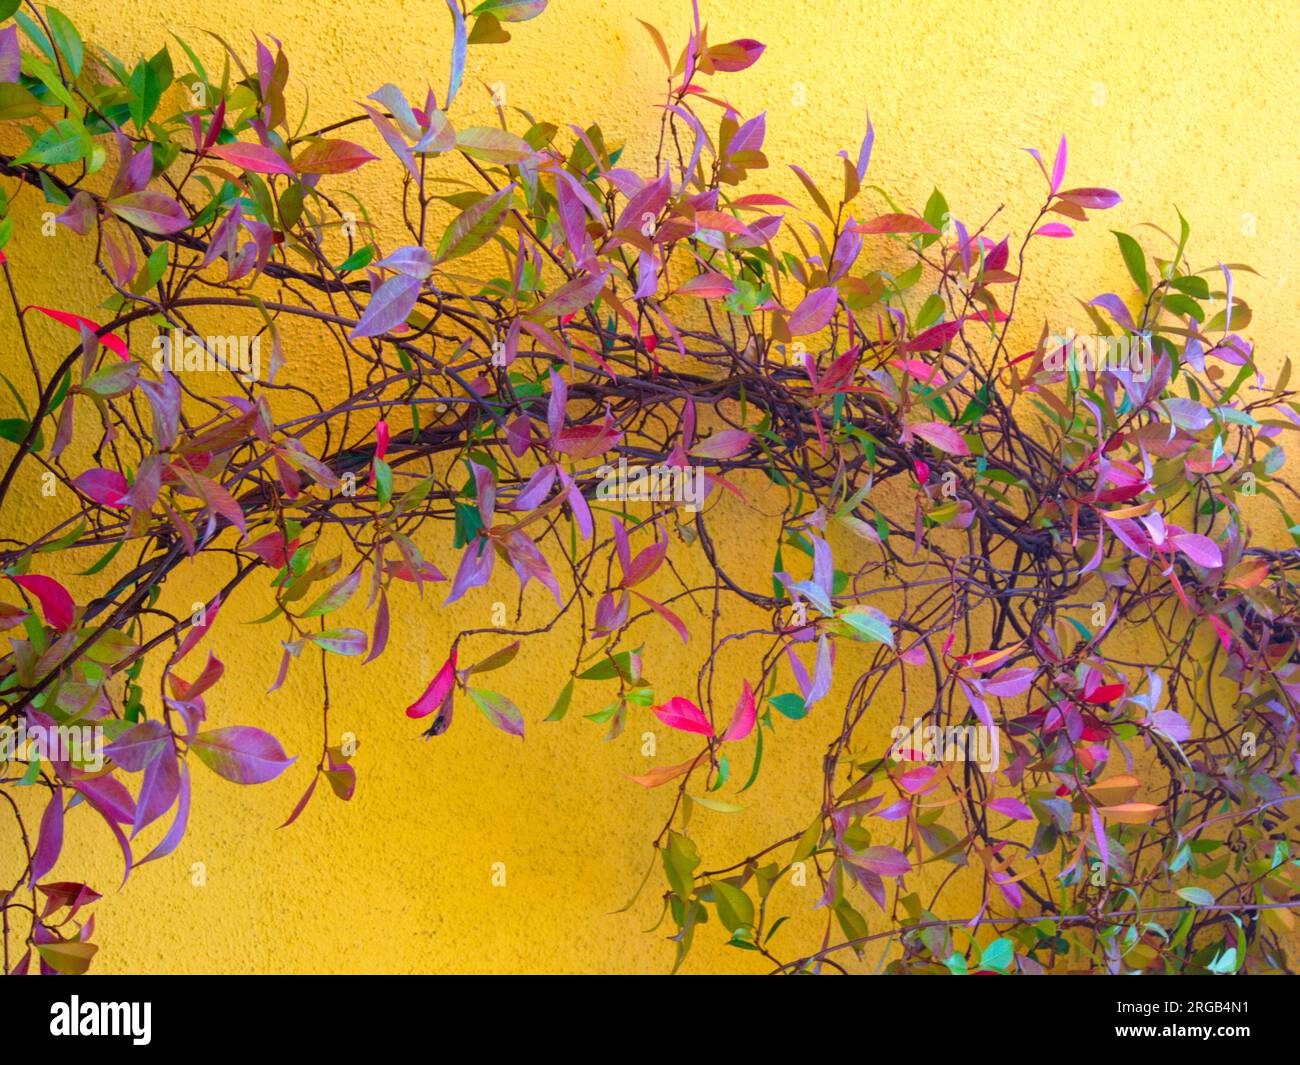 A plant with colorful leaves climbs up the garden wall of a house.Una planta de hojas coloridas se trepa por la pared del jardín de una casa Stock Photo